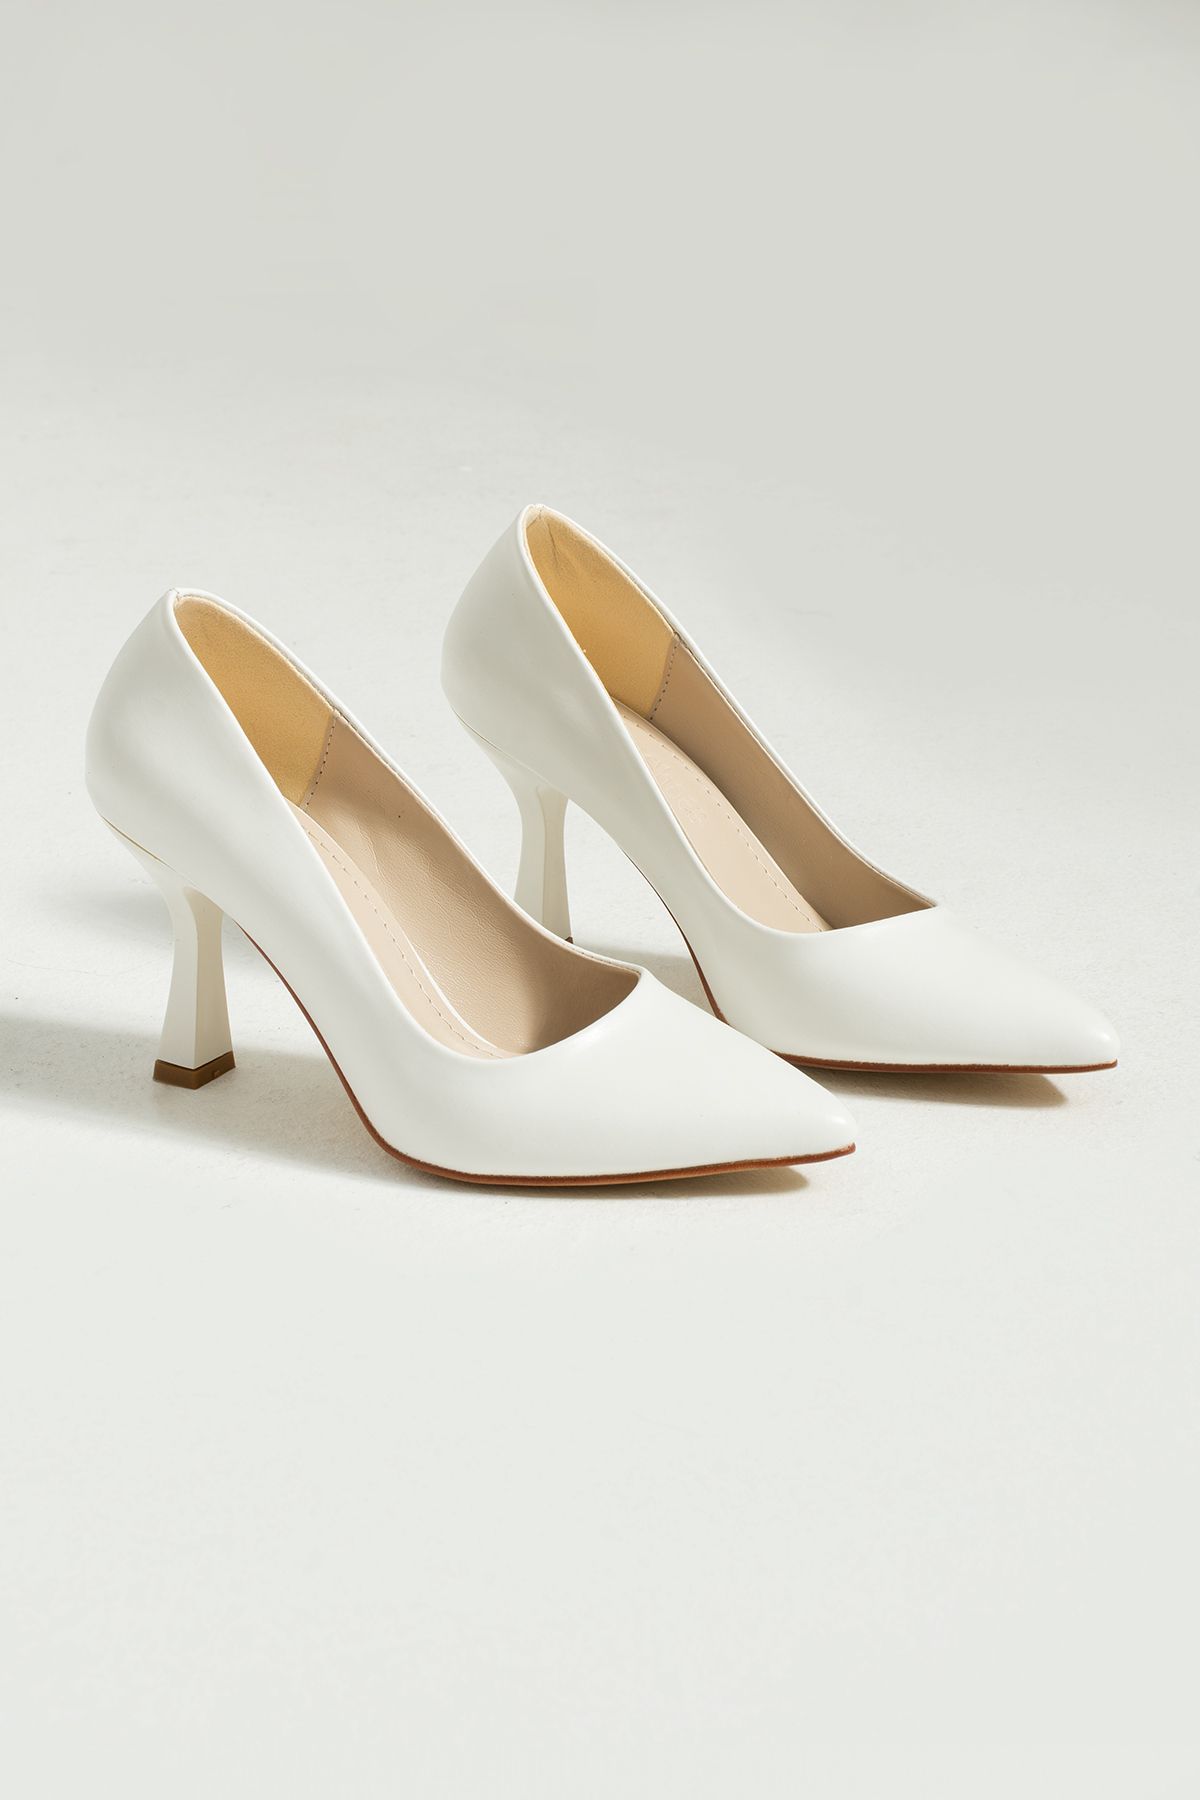 Güllü Shoes Kadın Topuklu Ayakkabı - Yüksek Topuklu Stiletto Rahat Şık Ve Ince Iş Ayakkabısı Beyaz 8.5 cm